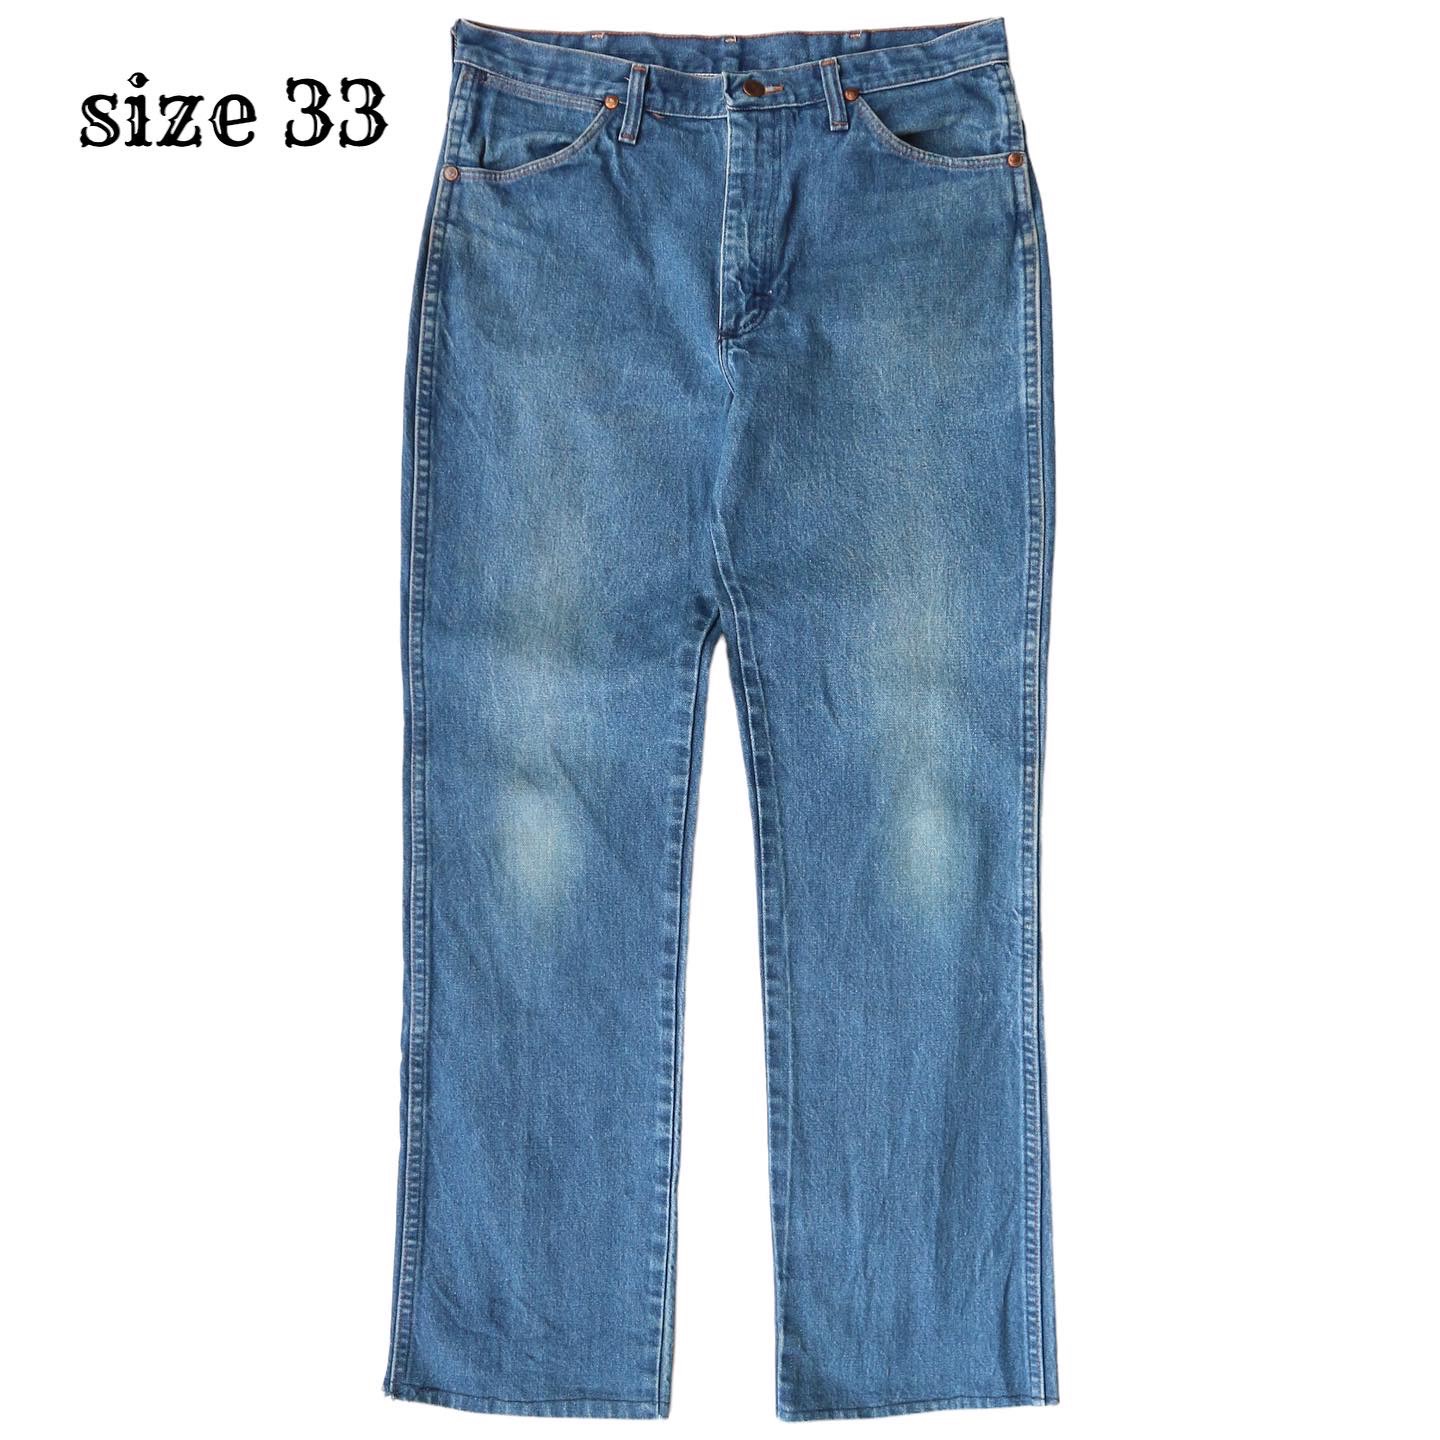 Wrangler Jeans Size 33 denimister